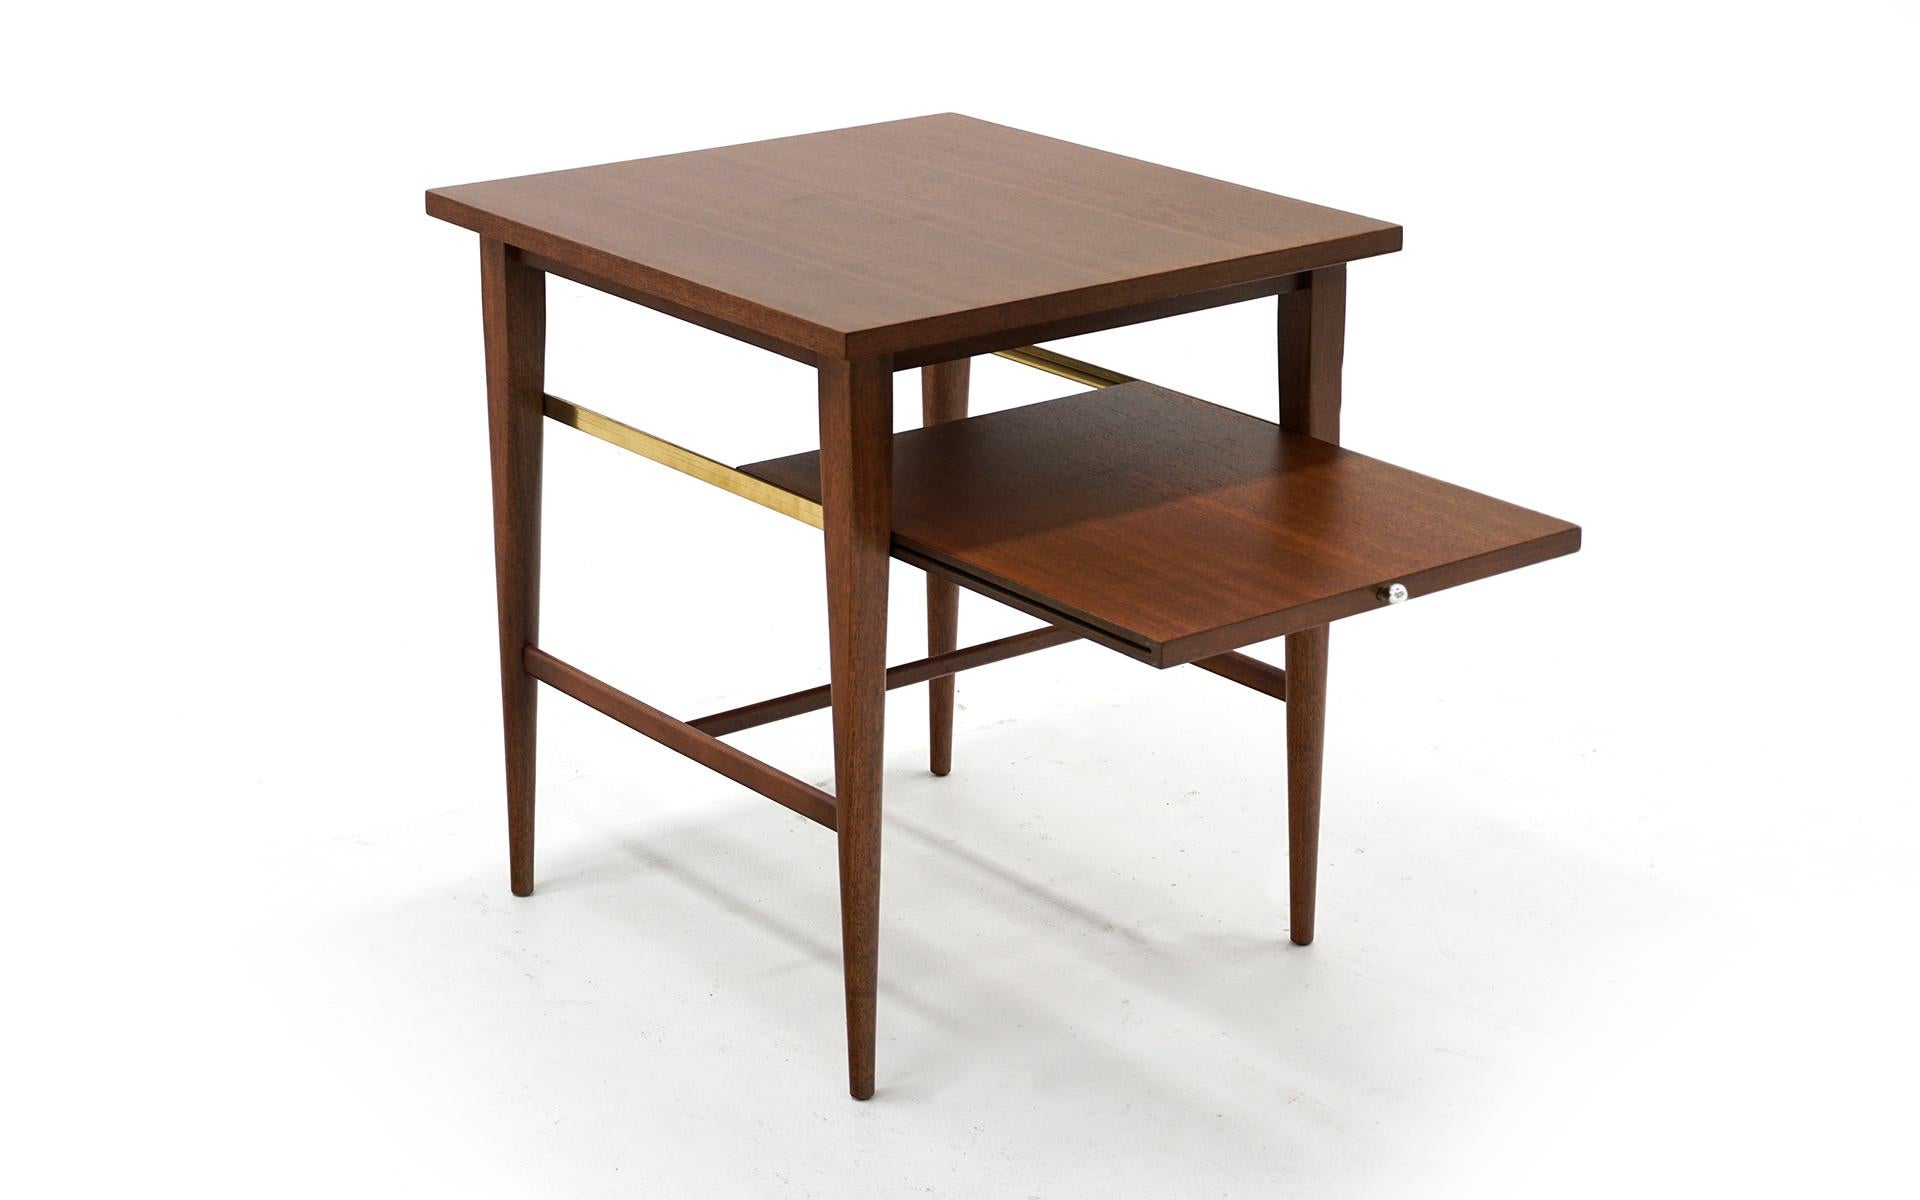 Mid-Century Modern Paul McCobb Model 1047 Side / End Table / Nightstand for Calvin, Slide Out Shelf